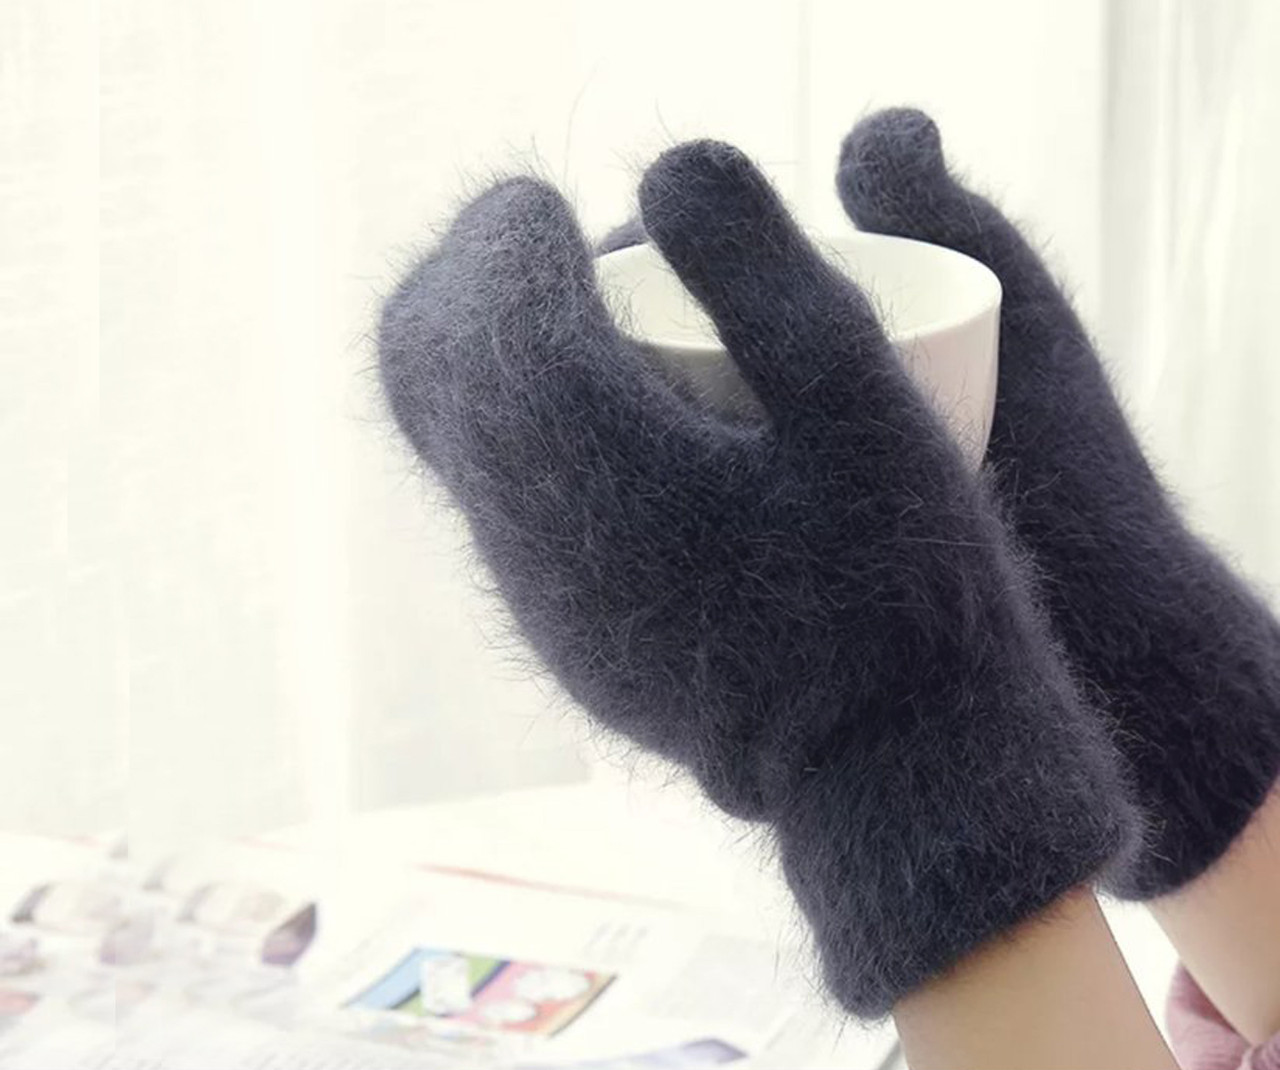 Зимні жіночі рукавички шерстяні, двошарові. Колір сірий.